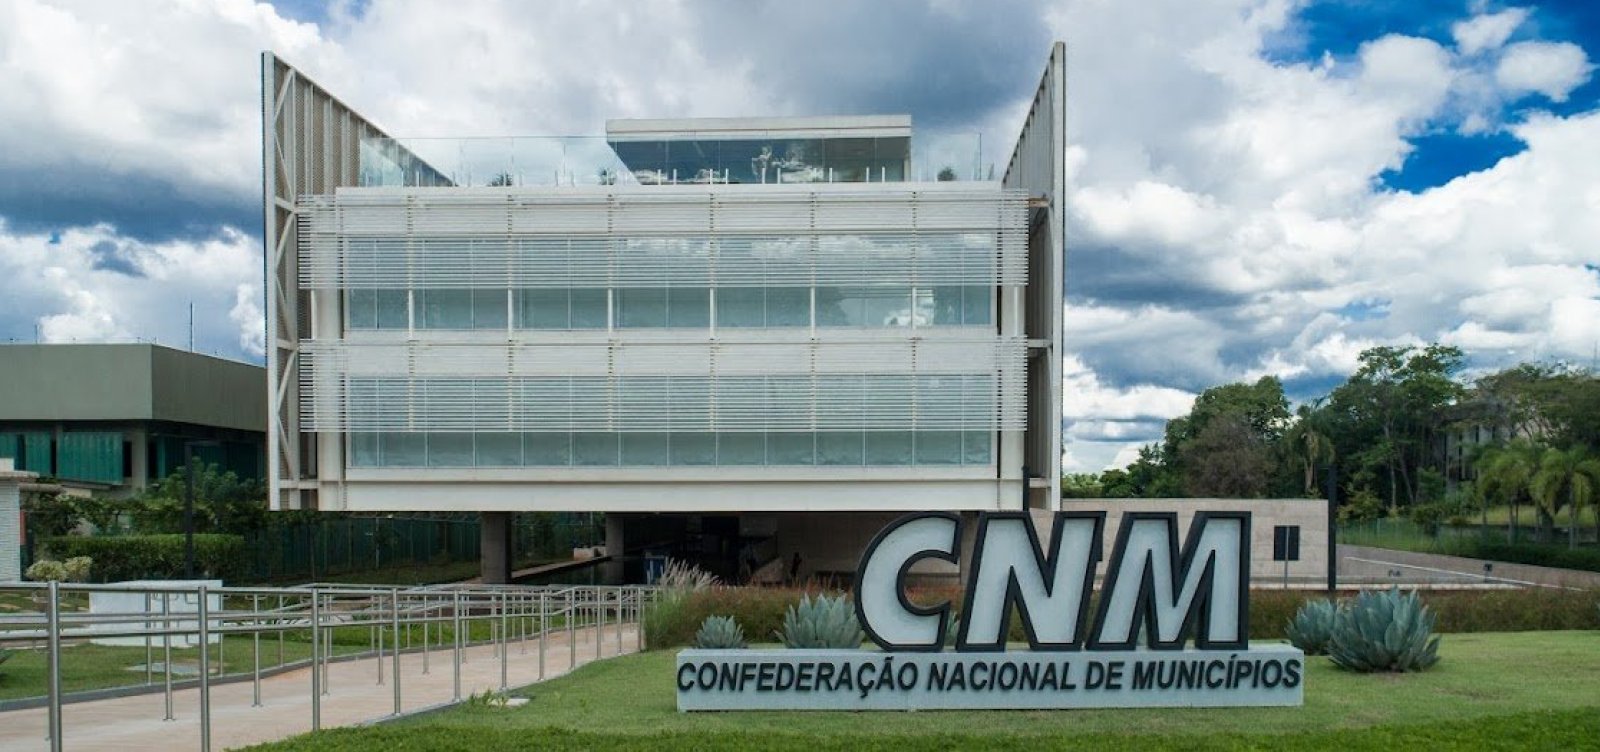 CNI entra com recurso para tentar reverter decisão da desoneração dos municípios 